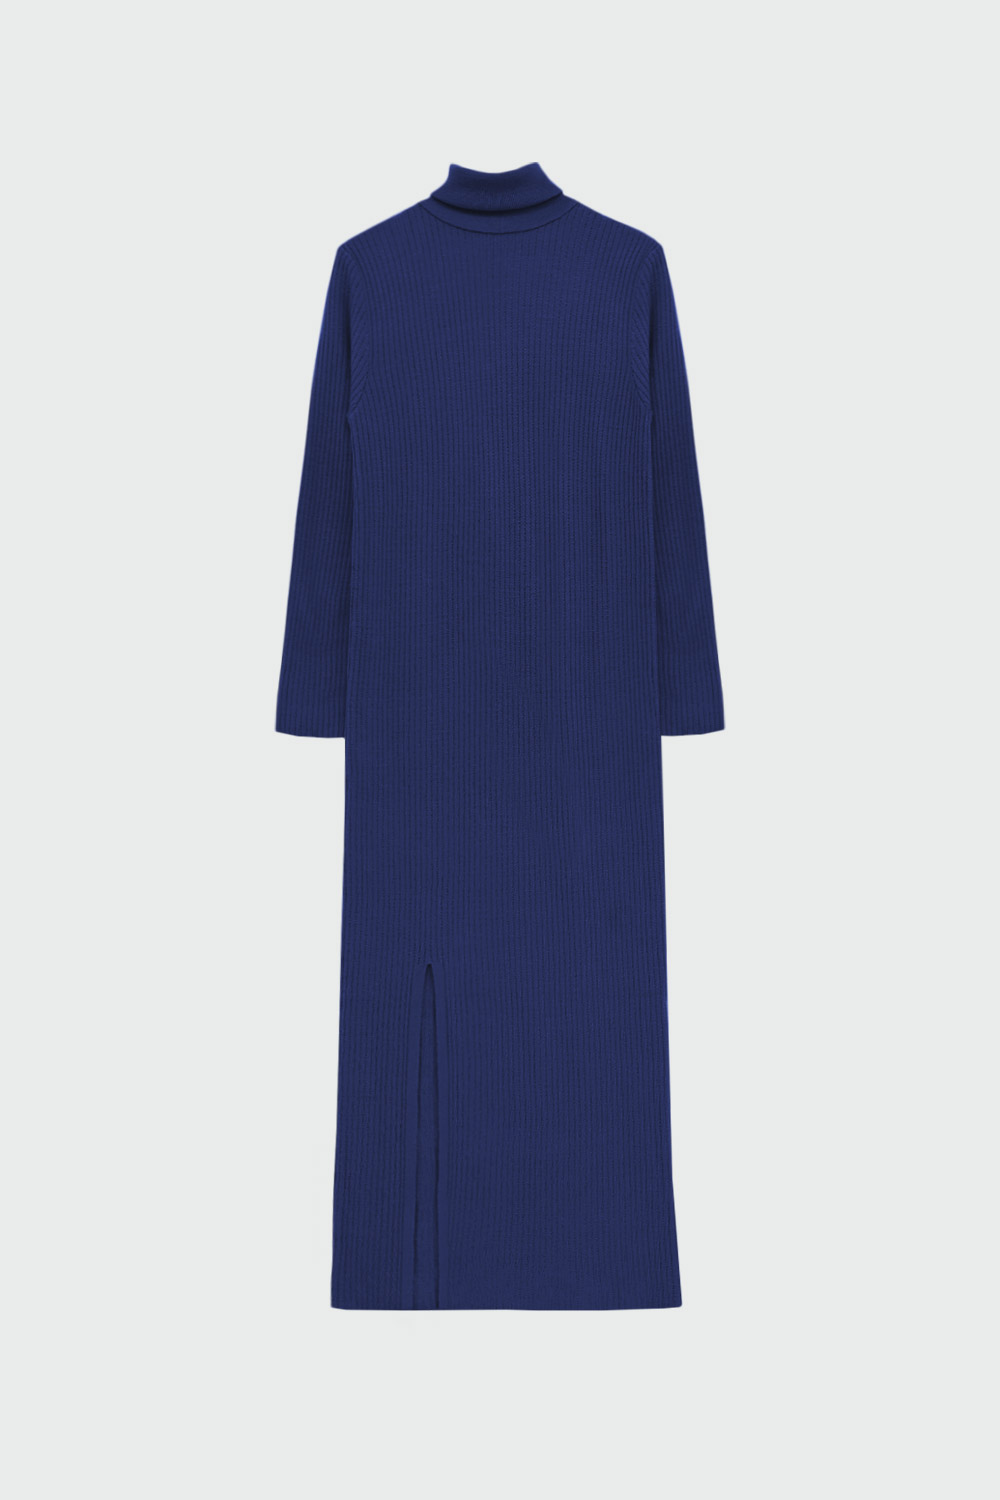 Boğazlı Yırtmaçlı Uzun Mavi Kadın Elbise